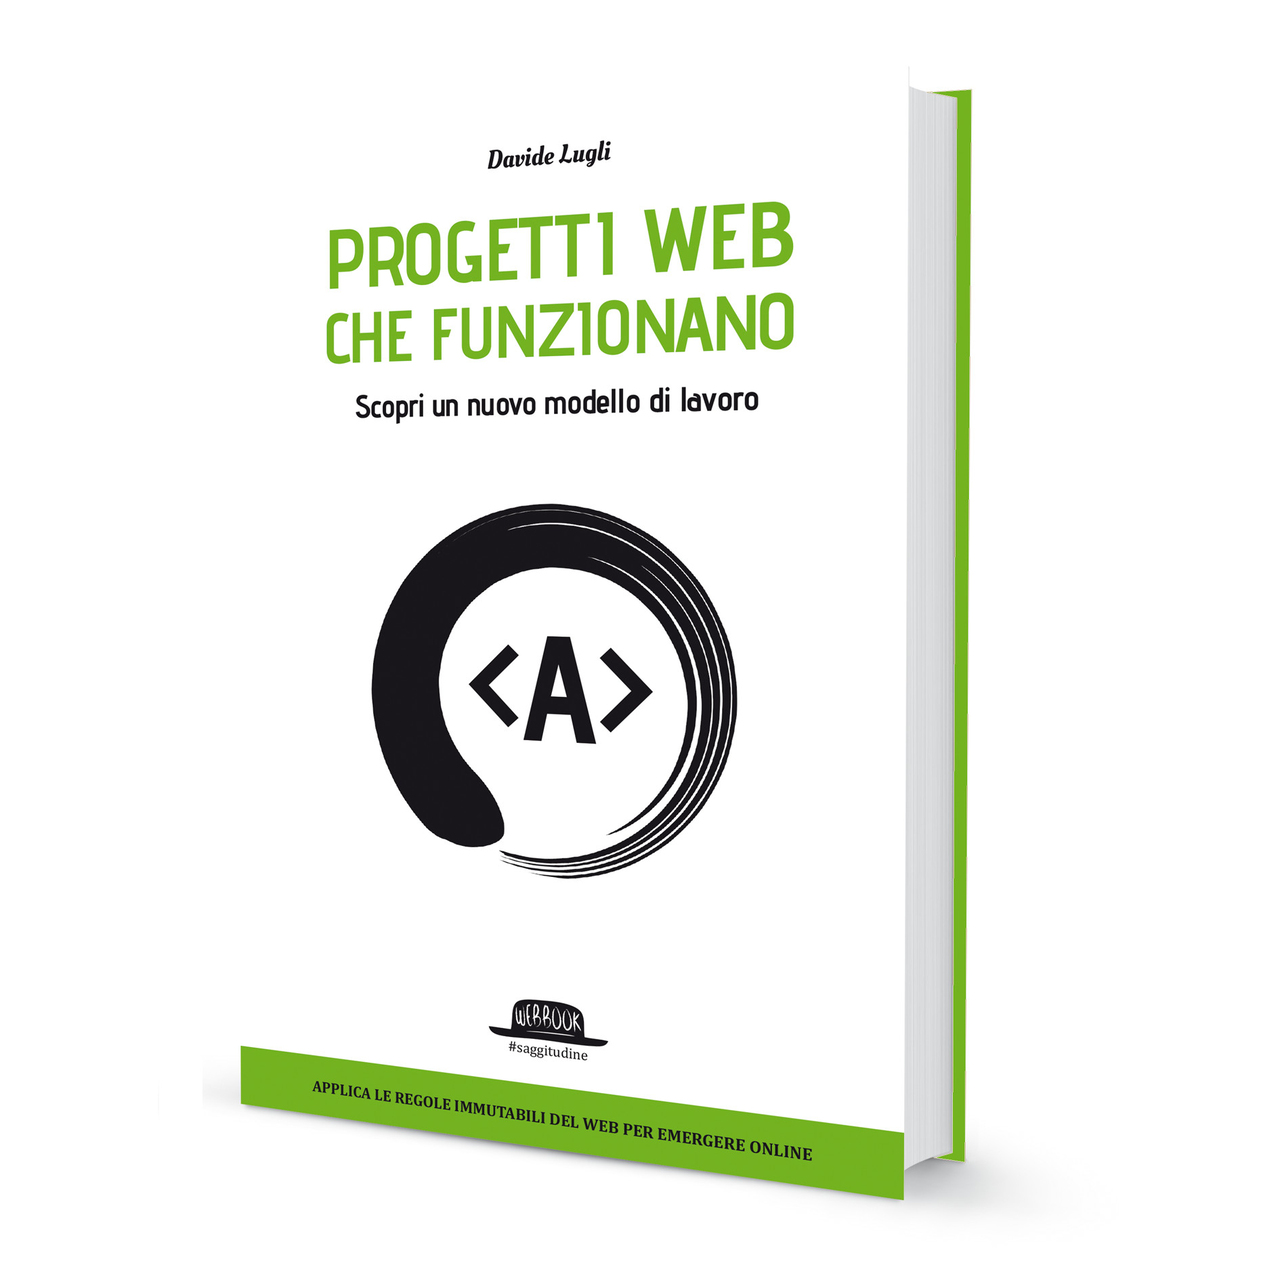 Davide Lugli: 2018 m. Davide Lugli buvo knygos „Web Projects that work“ autorius, kurią išleido Dario Flaccovio redaktorius iš Palermo